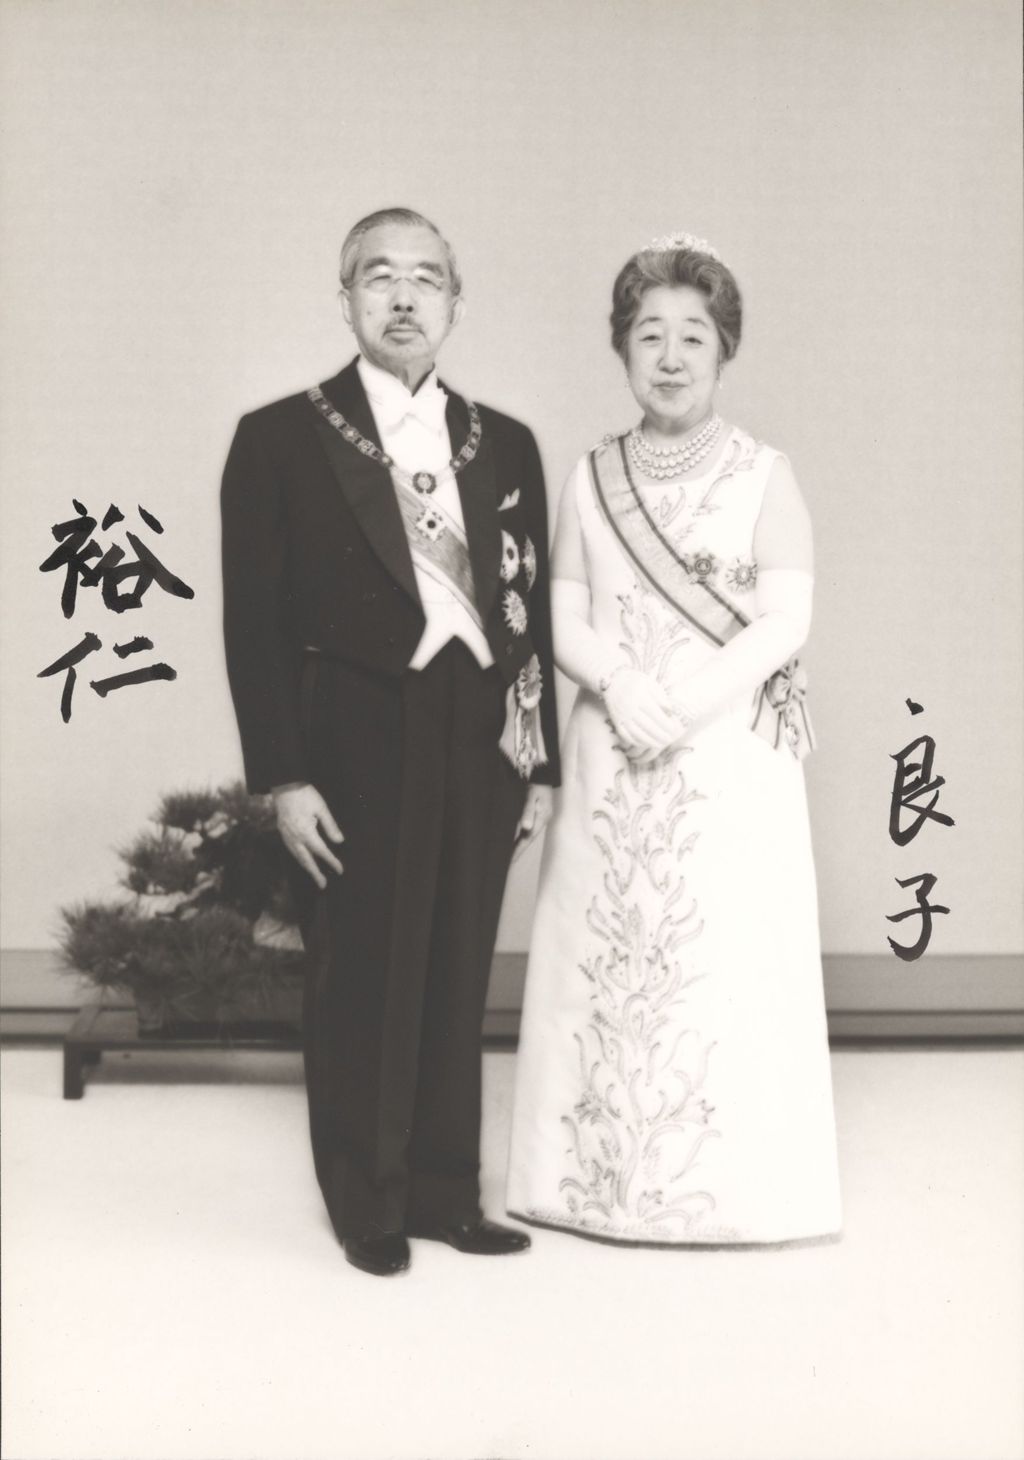 Miniature of Emperor Hirohito of Japan and Empress Kōjun